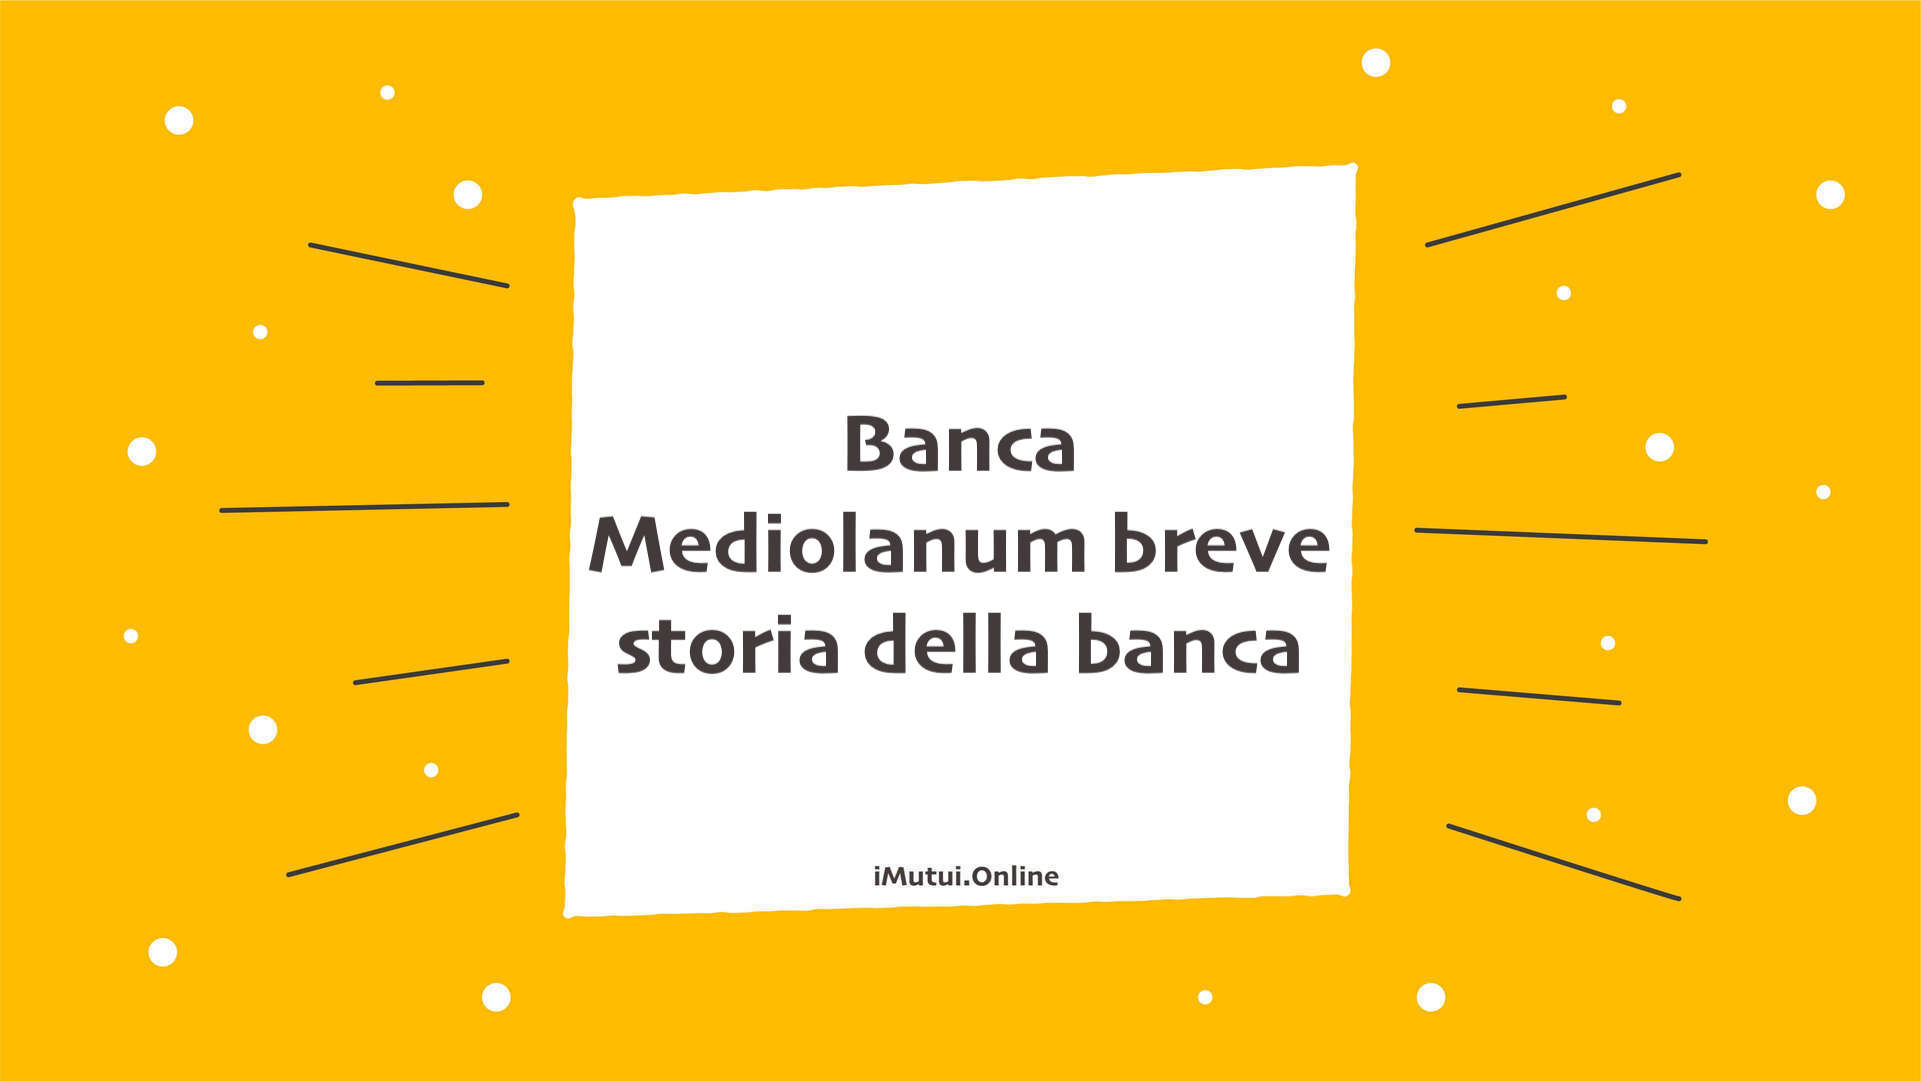 Banca Mediolanum breve storia della banca